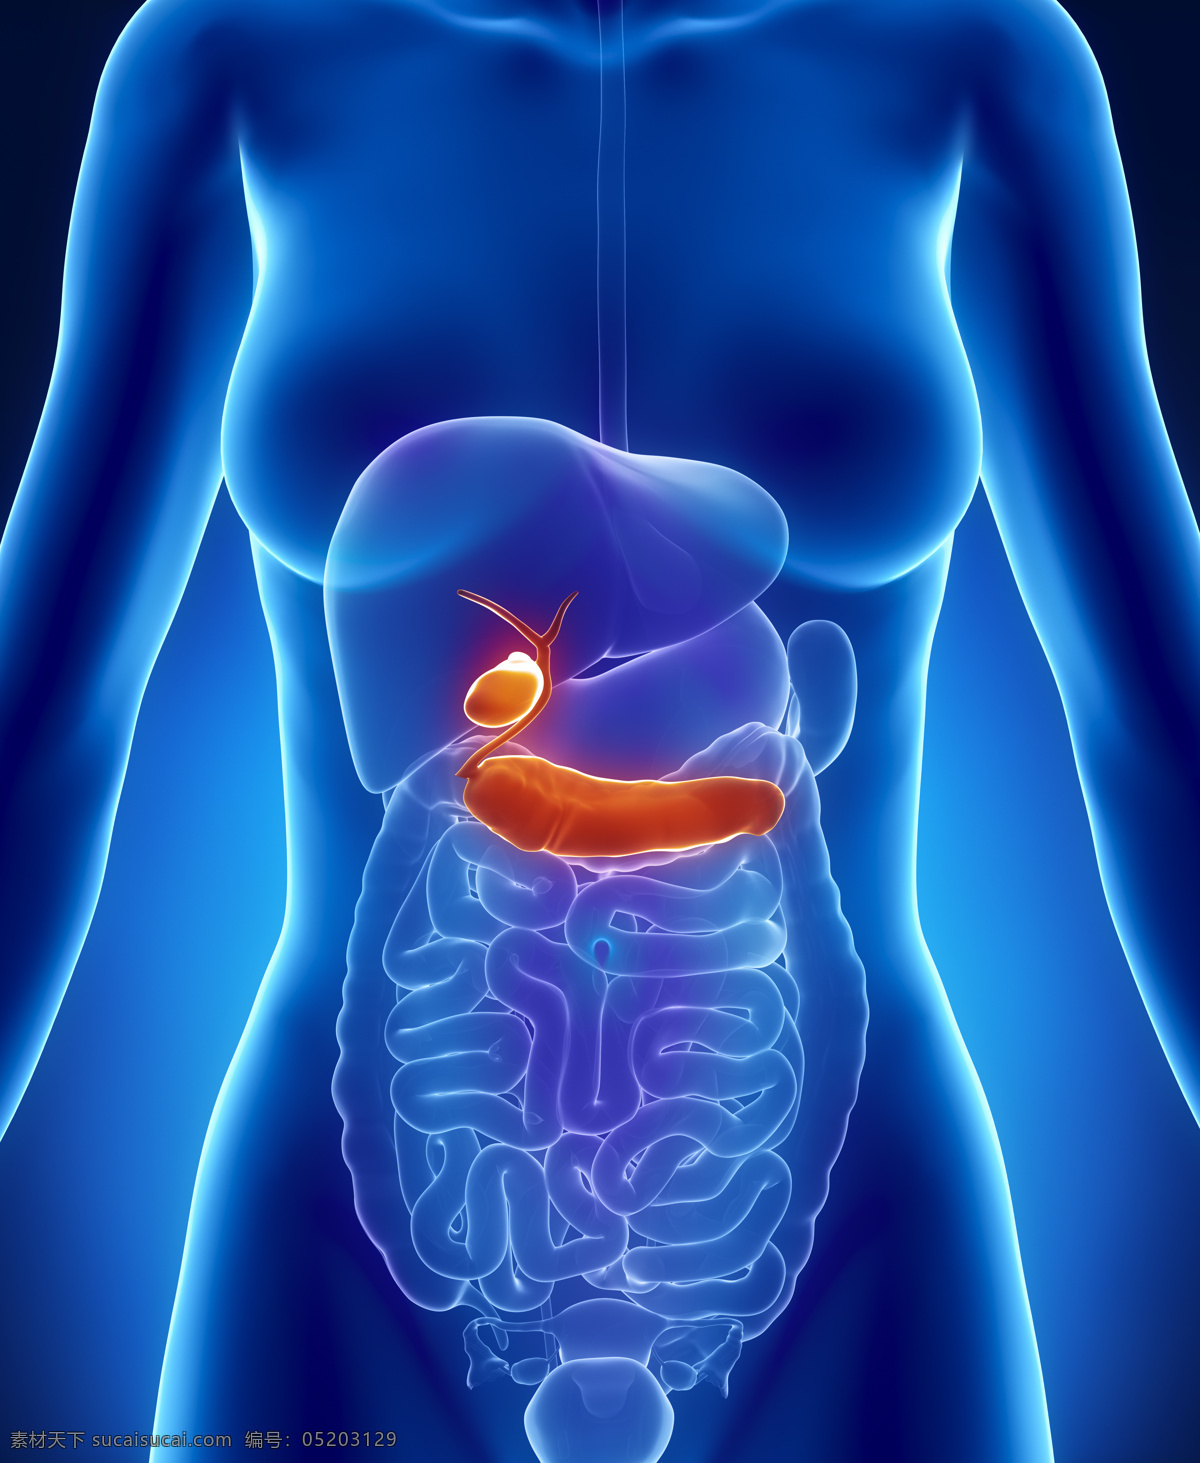 女性 内脏 器官 内脏器官 肠子器官 肝脏器官 人体器官 医疗科学 医学 人体器官图 人物图片